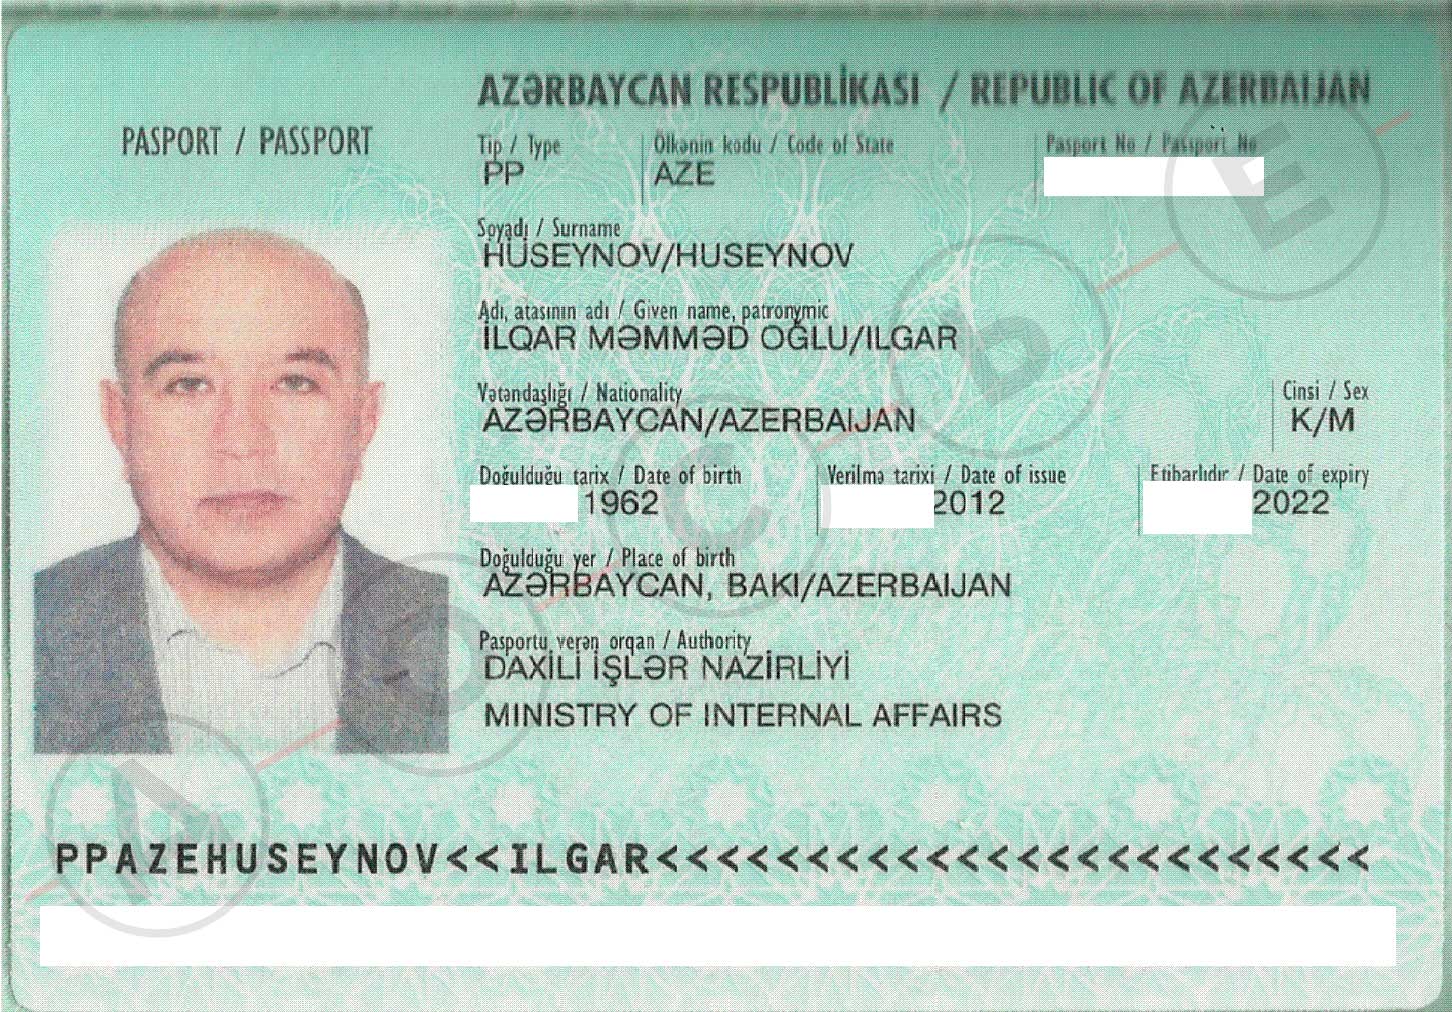 паспорт армении